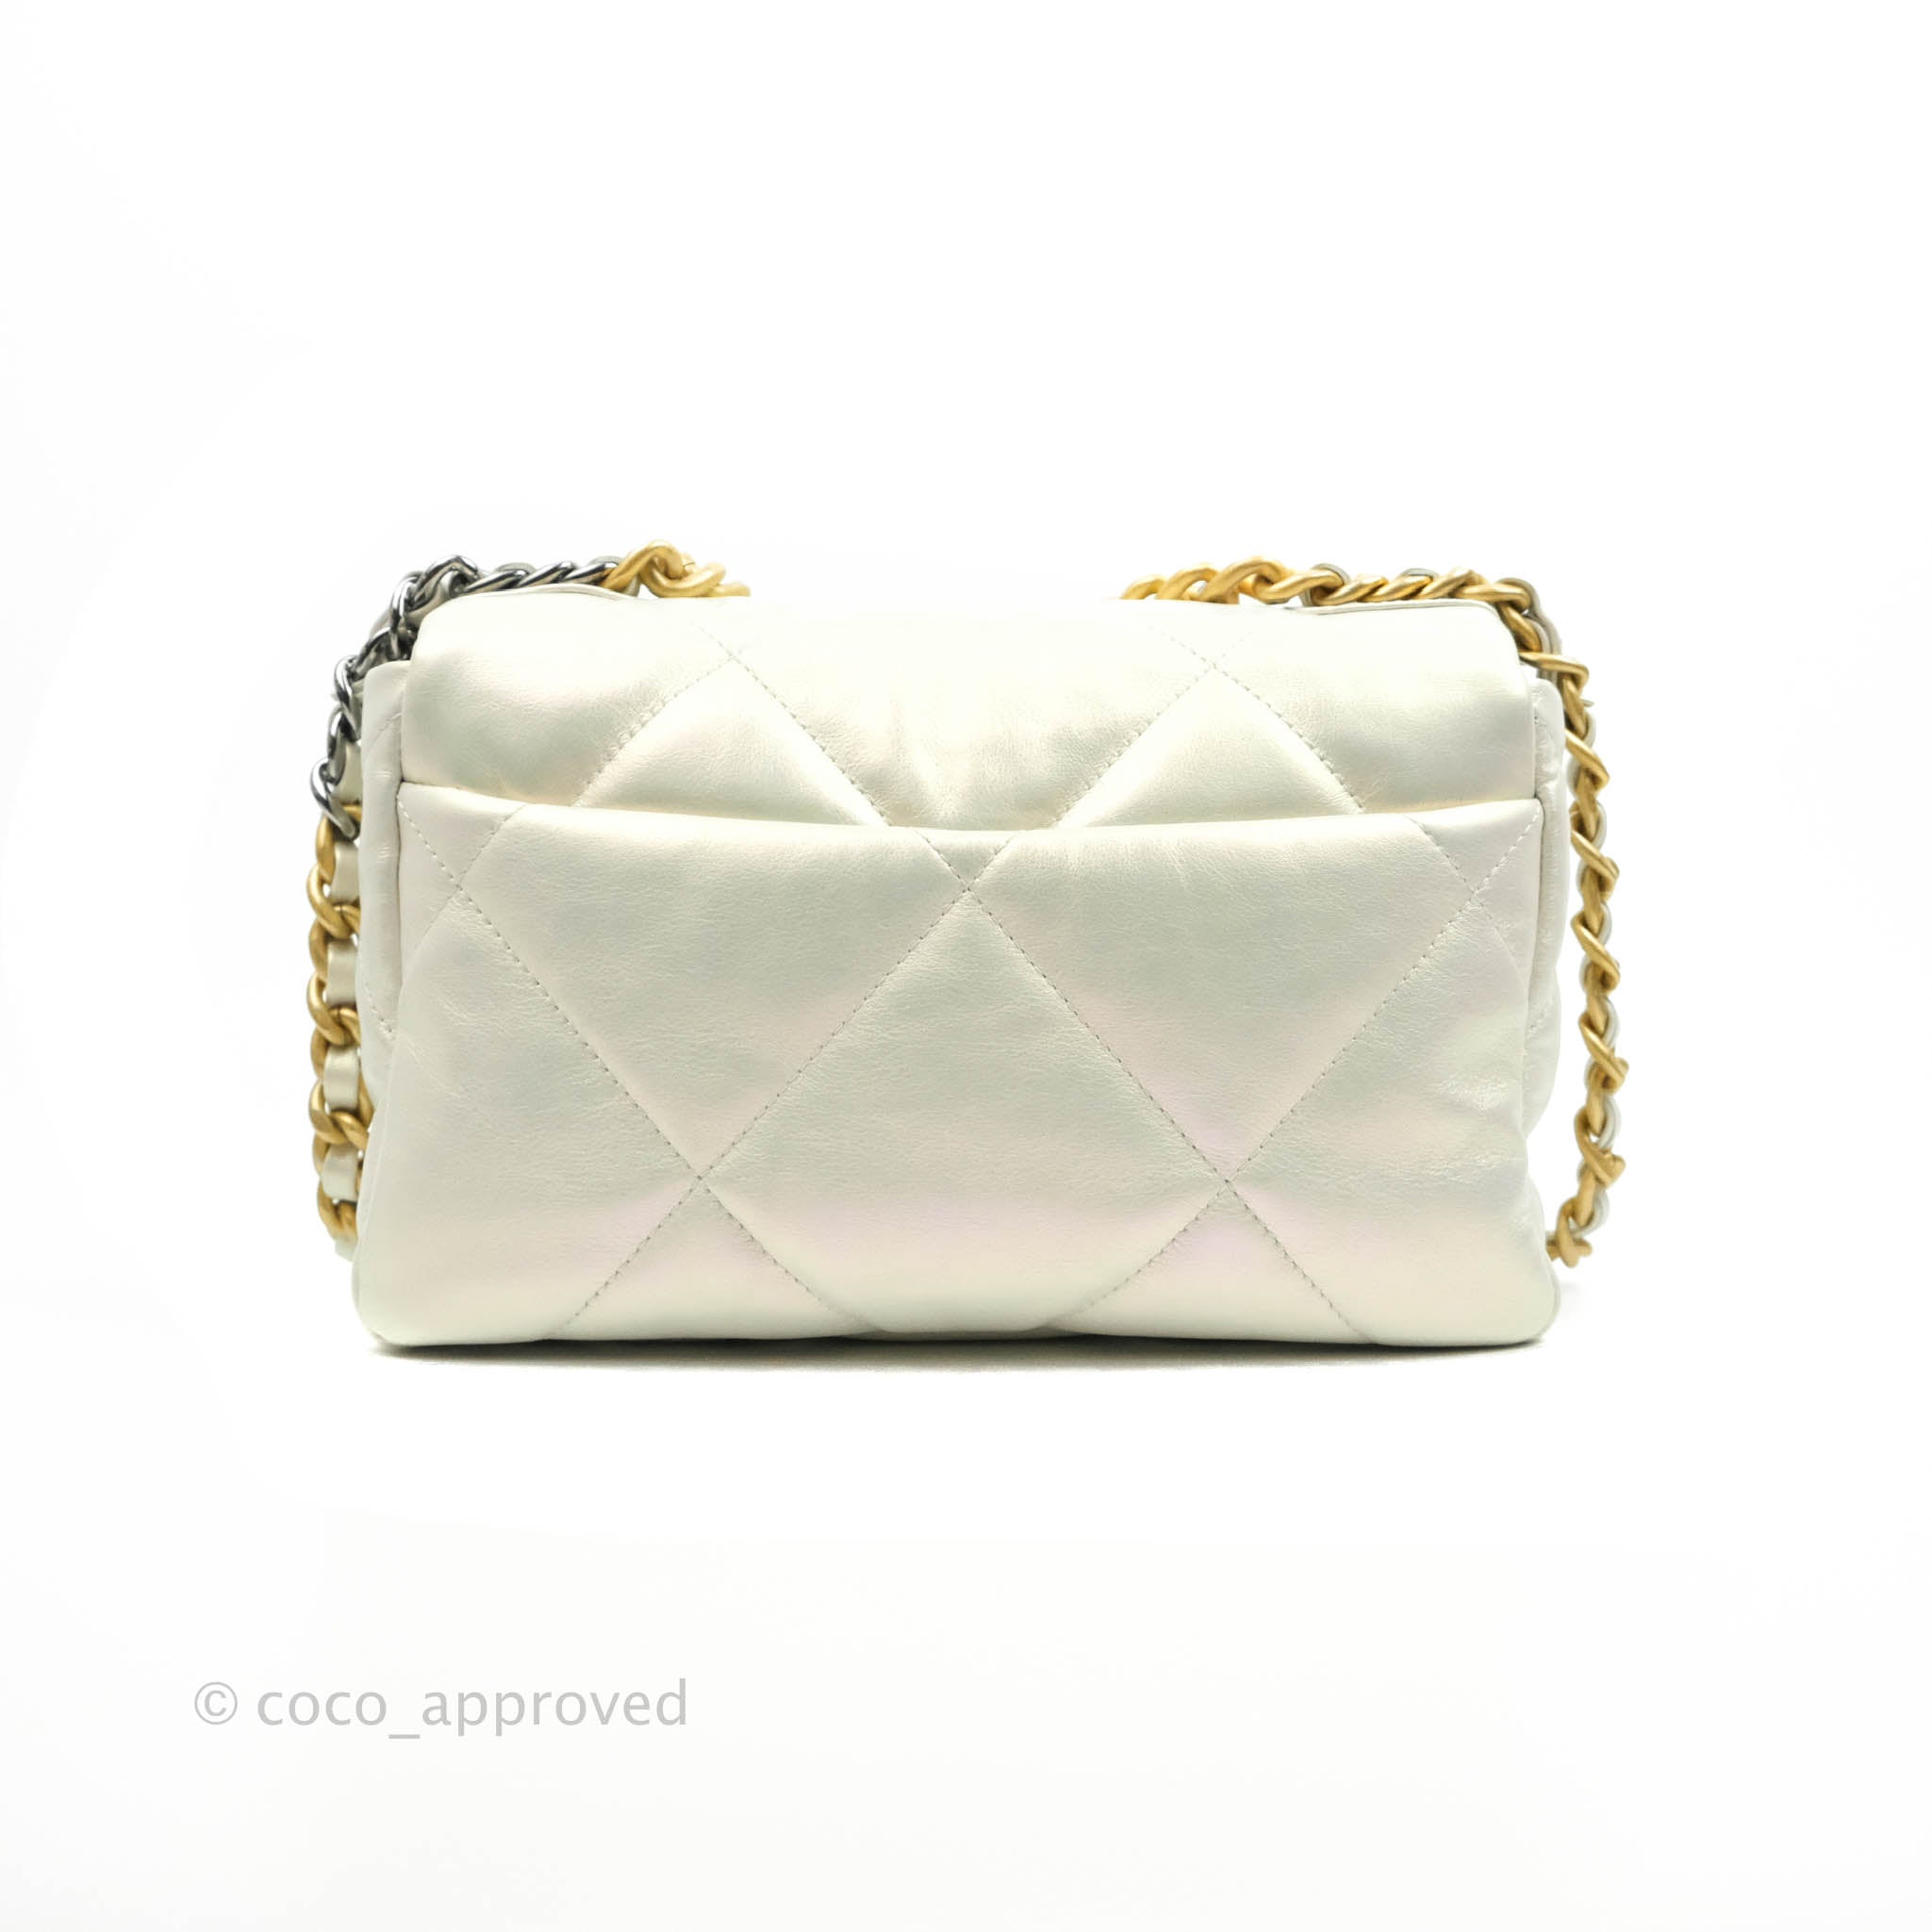 Chanel Medium 19 Flap Bag Beige Iridescent Calfskin Mixed Hardware